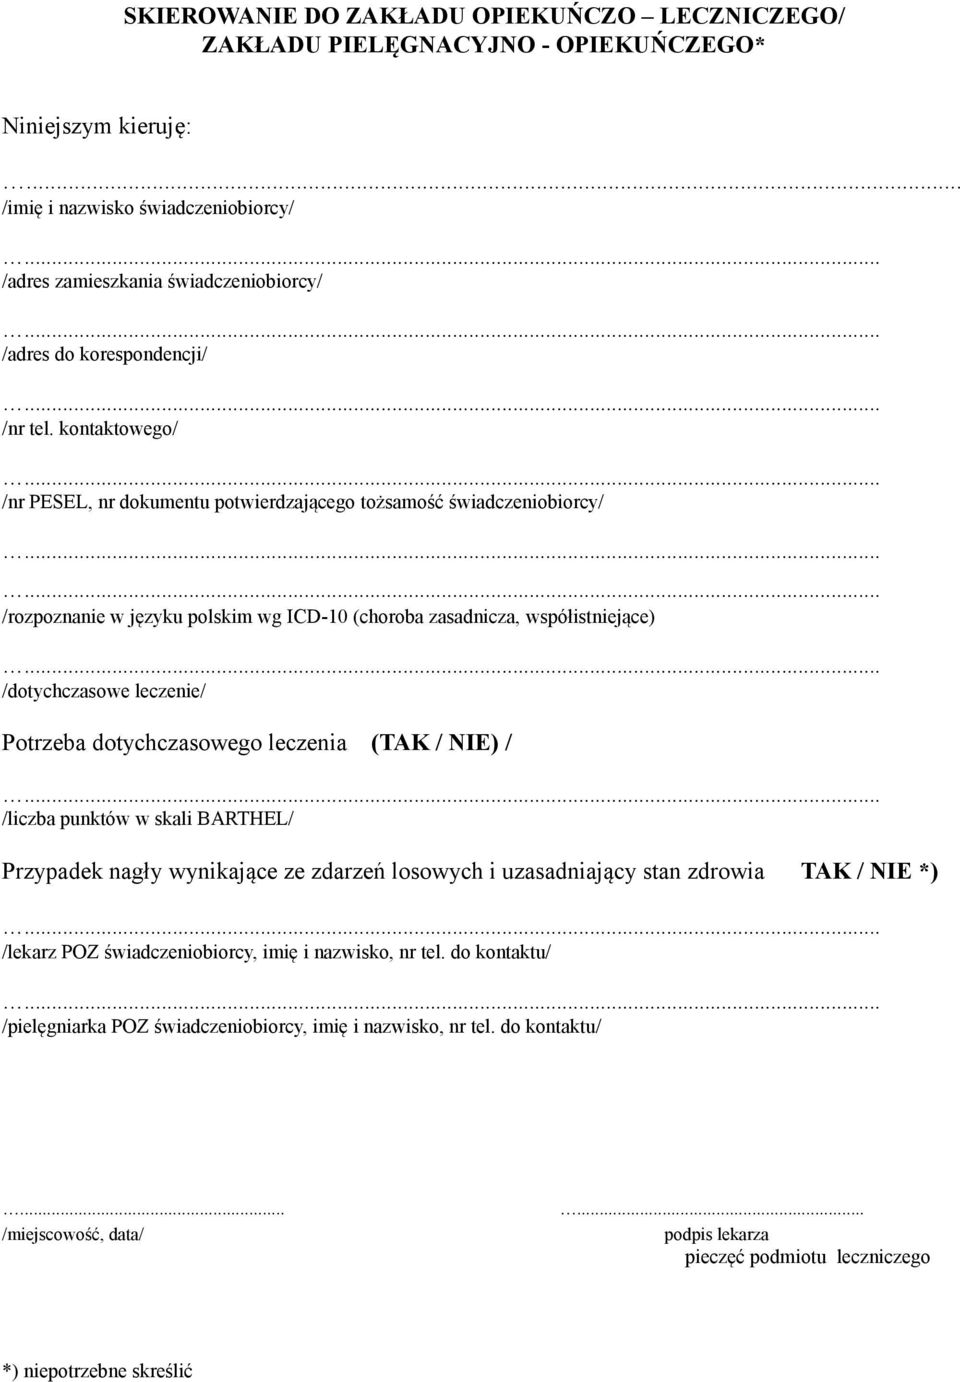 kontaktowego/ /nr PESEL, nr dokumentu potwierdzającego tożsamość świadczeniobiorcy/ /rozpoznanie w języku polskim wg ICD-10 (choroba zasadnicza, współistniejące) /dotychczasowe leczenie/ Potrzeba